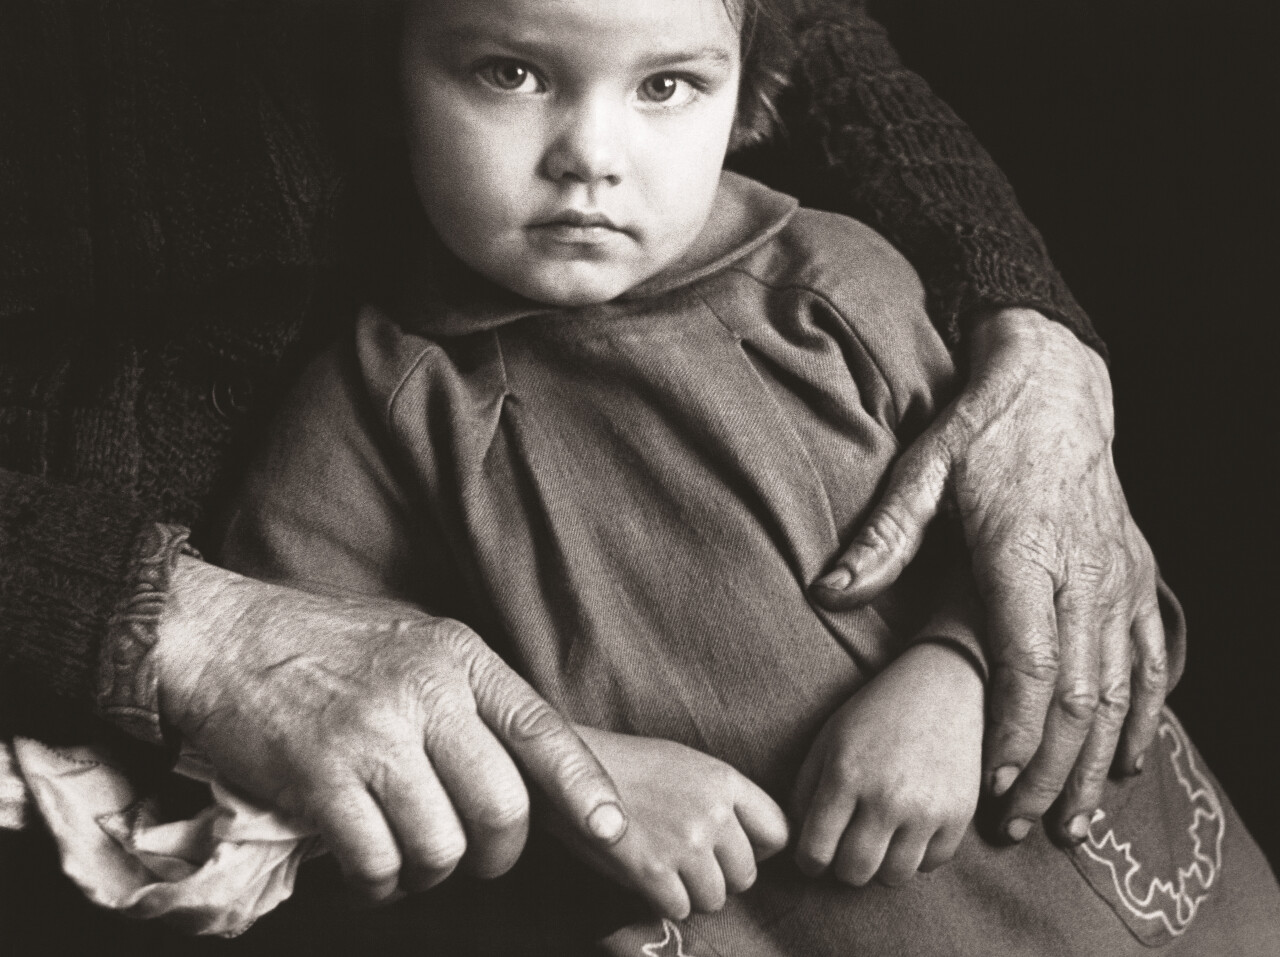 Руки, 1960 год, фотограф Антанас Суткус